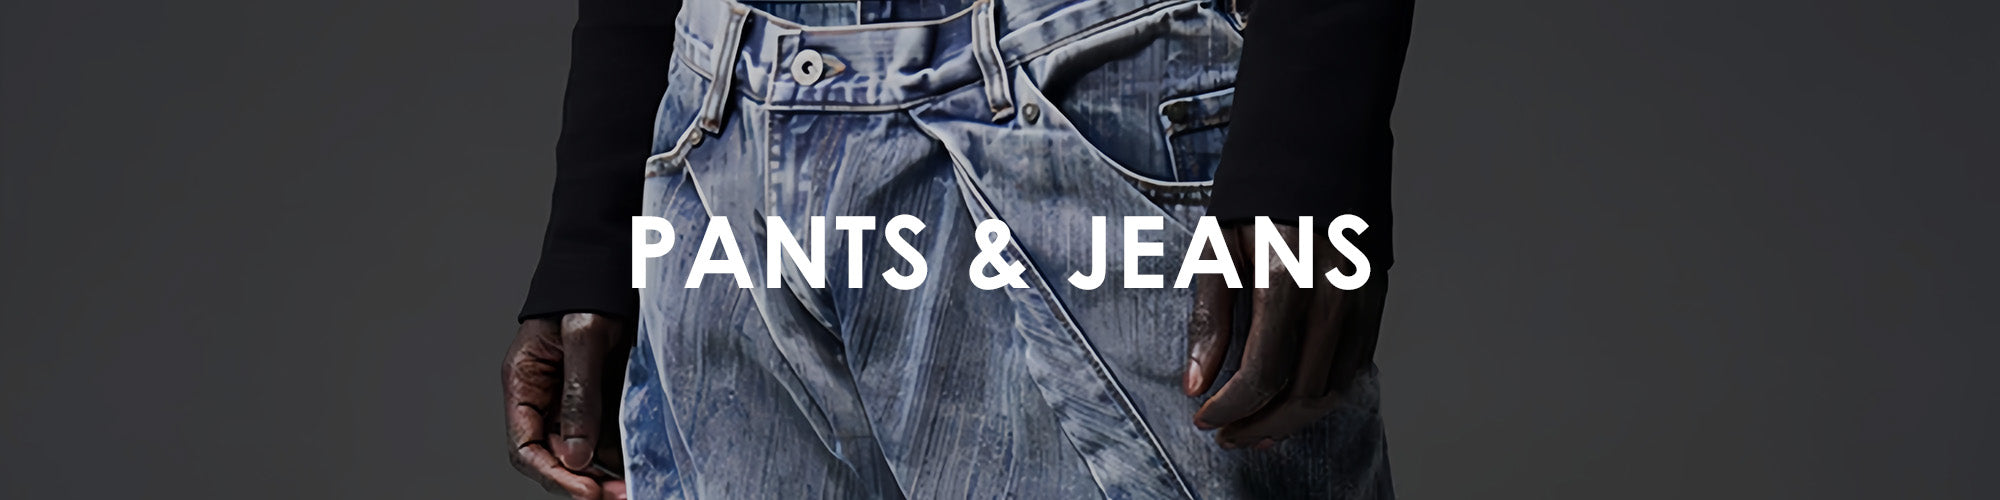 Pants & Jeans